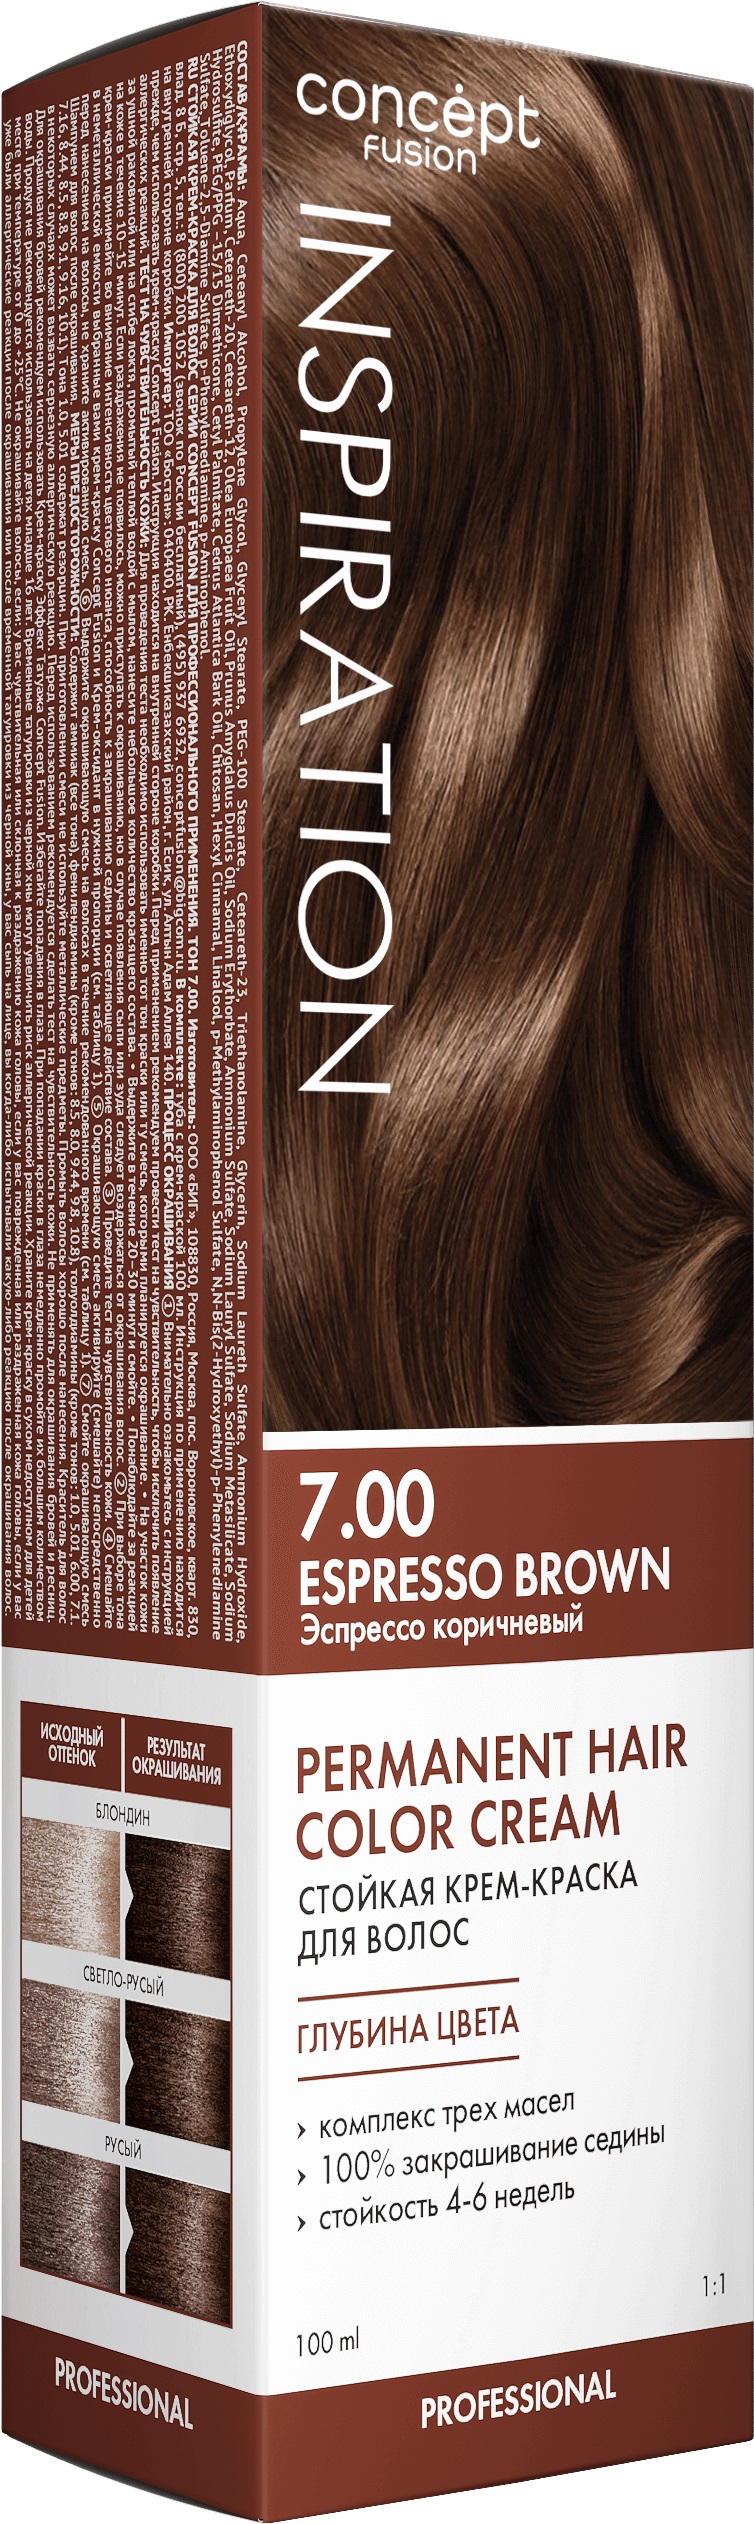 Крем-краска Concept Fusion Inspiration эспрессо коричневый, №7.00, 100 мл